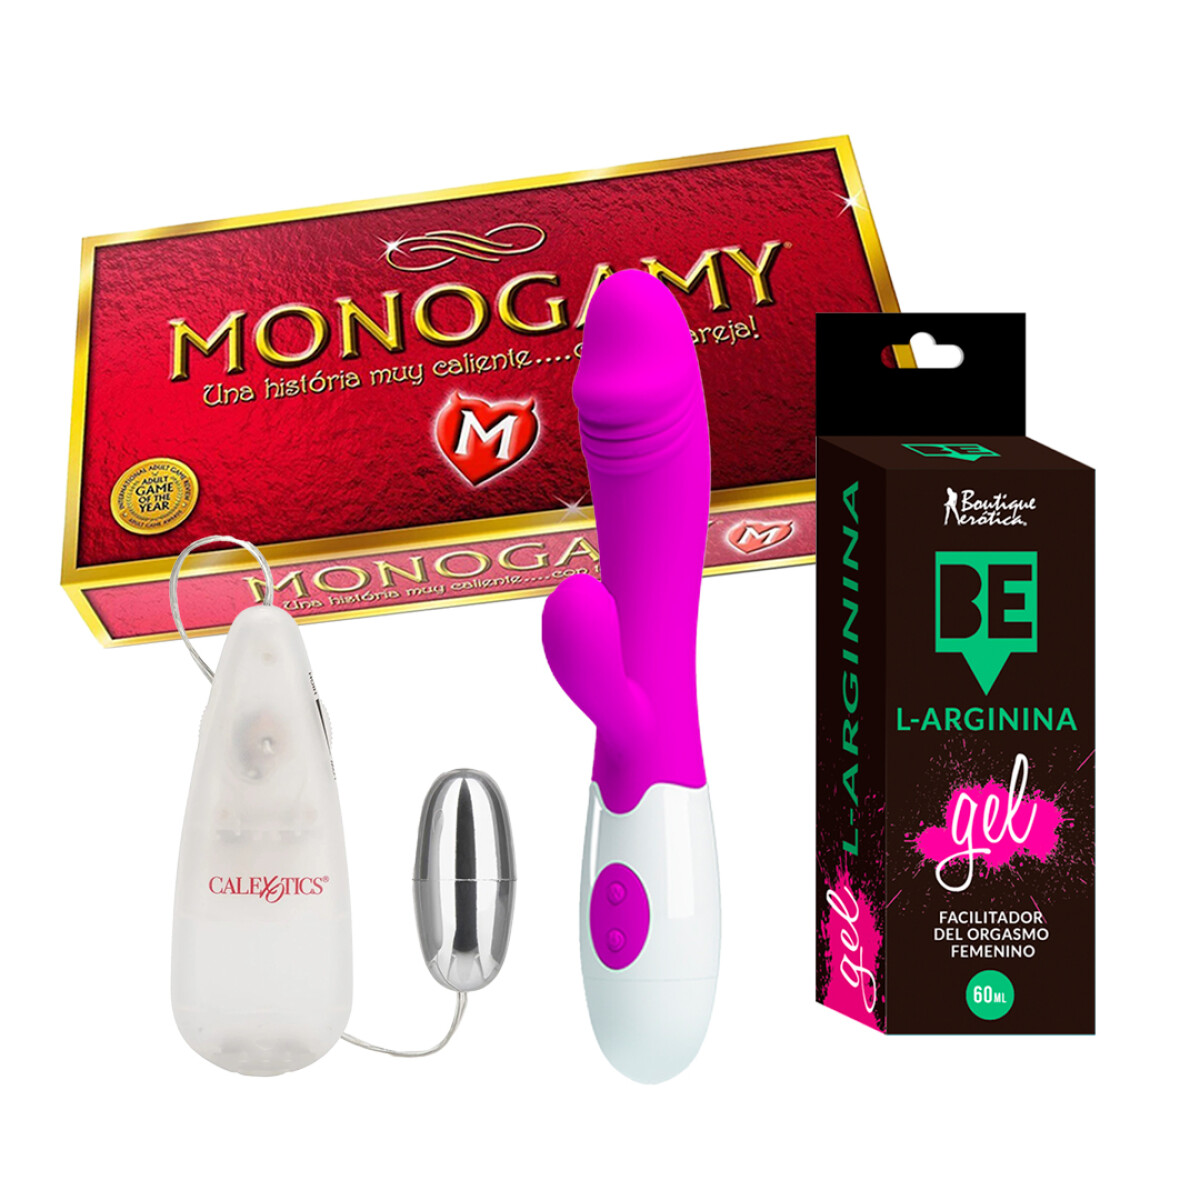 Monogamy + Vibrador Snappy + Bala Vibradora + Gel Larginina 